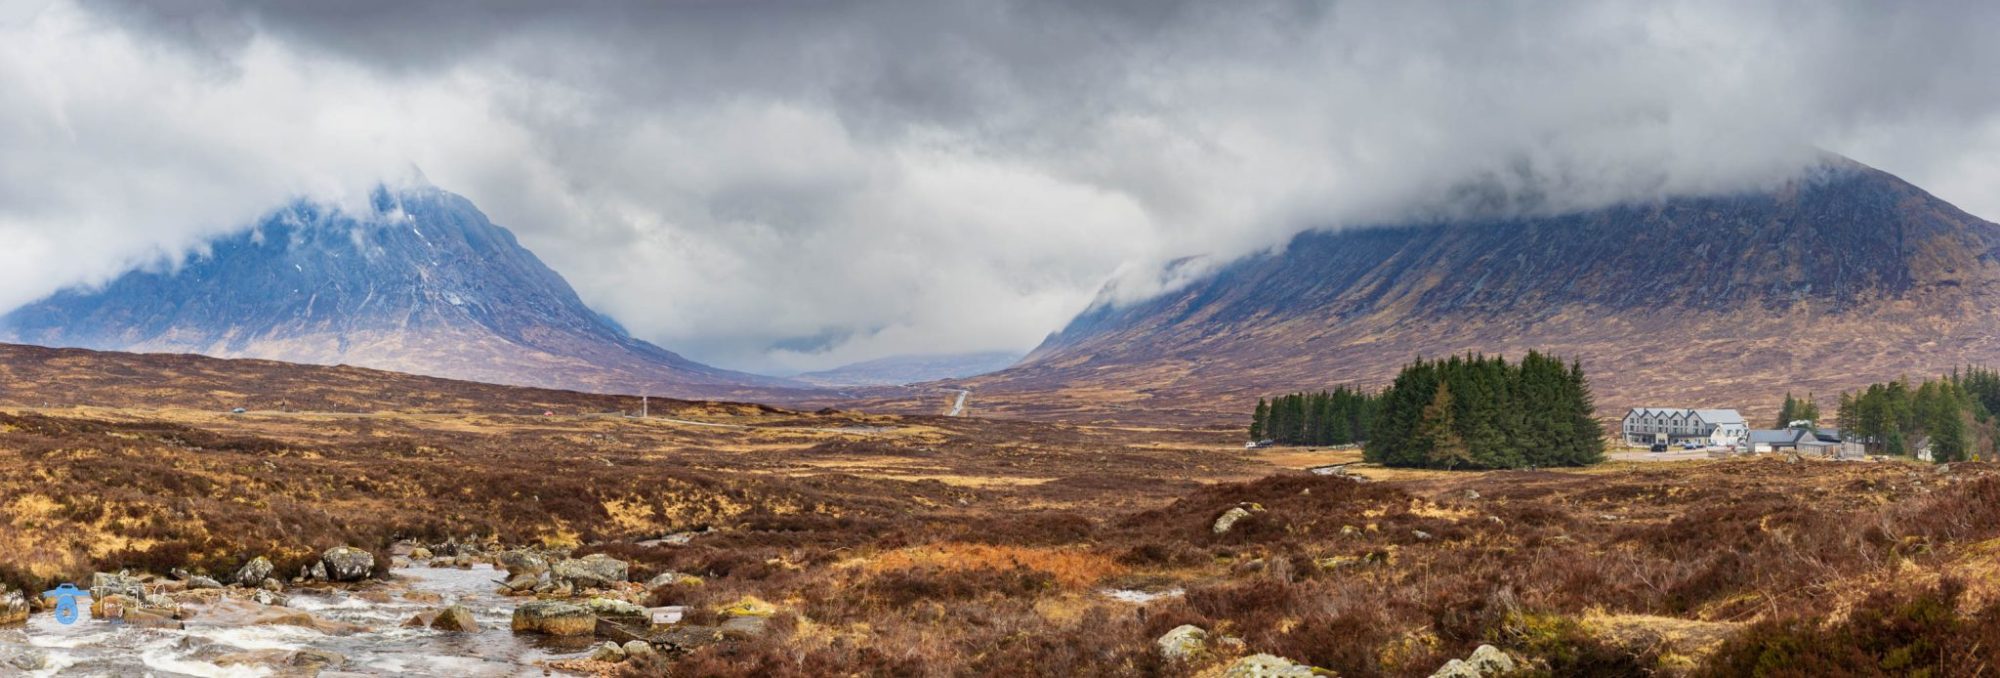 tony-tomlinson-photography-glencoe-scotland-panoramic